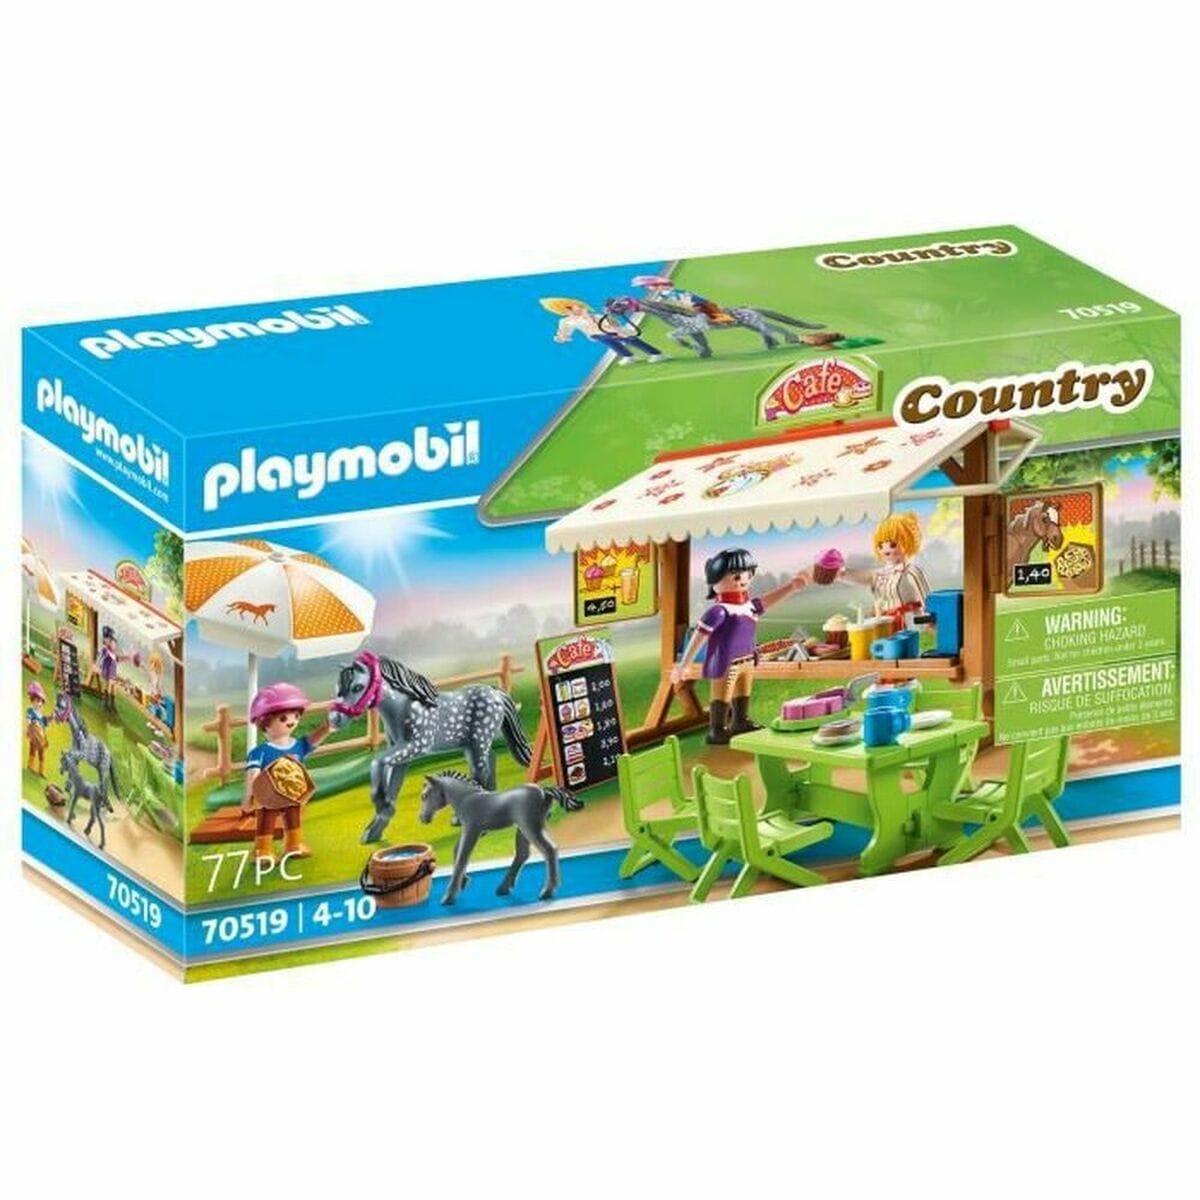 Playmobil Spielzeug | Kostüme > Spielzeug und Spiele > Weiteres spielzeug Playset Playmobil Country 70519 77 Stücke